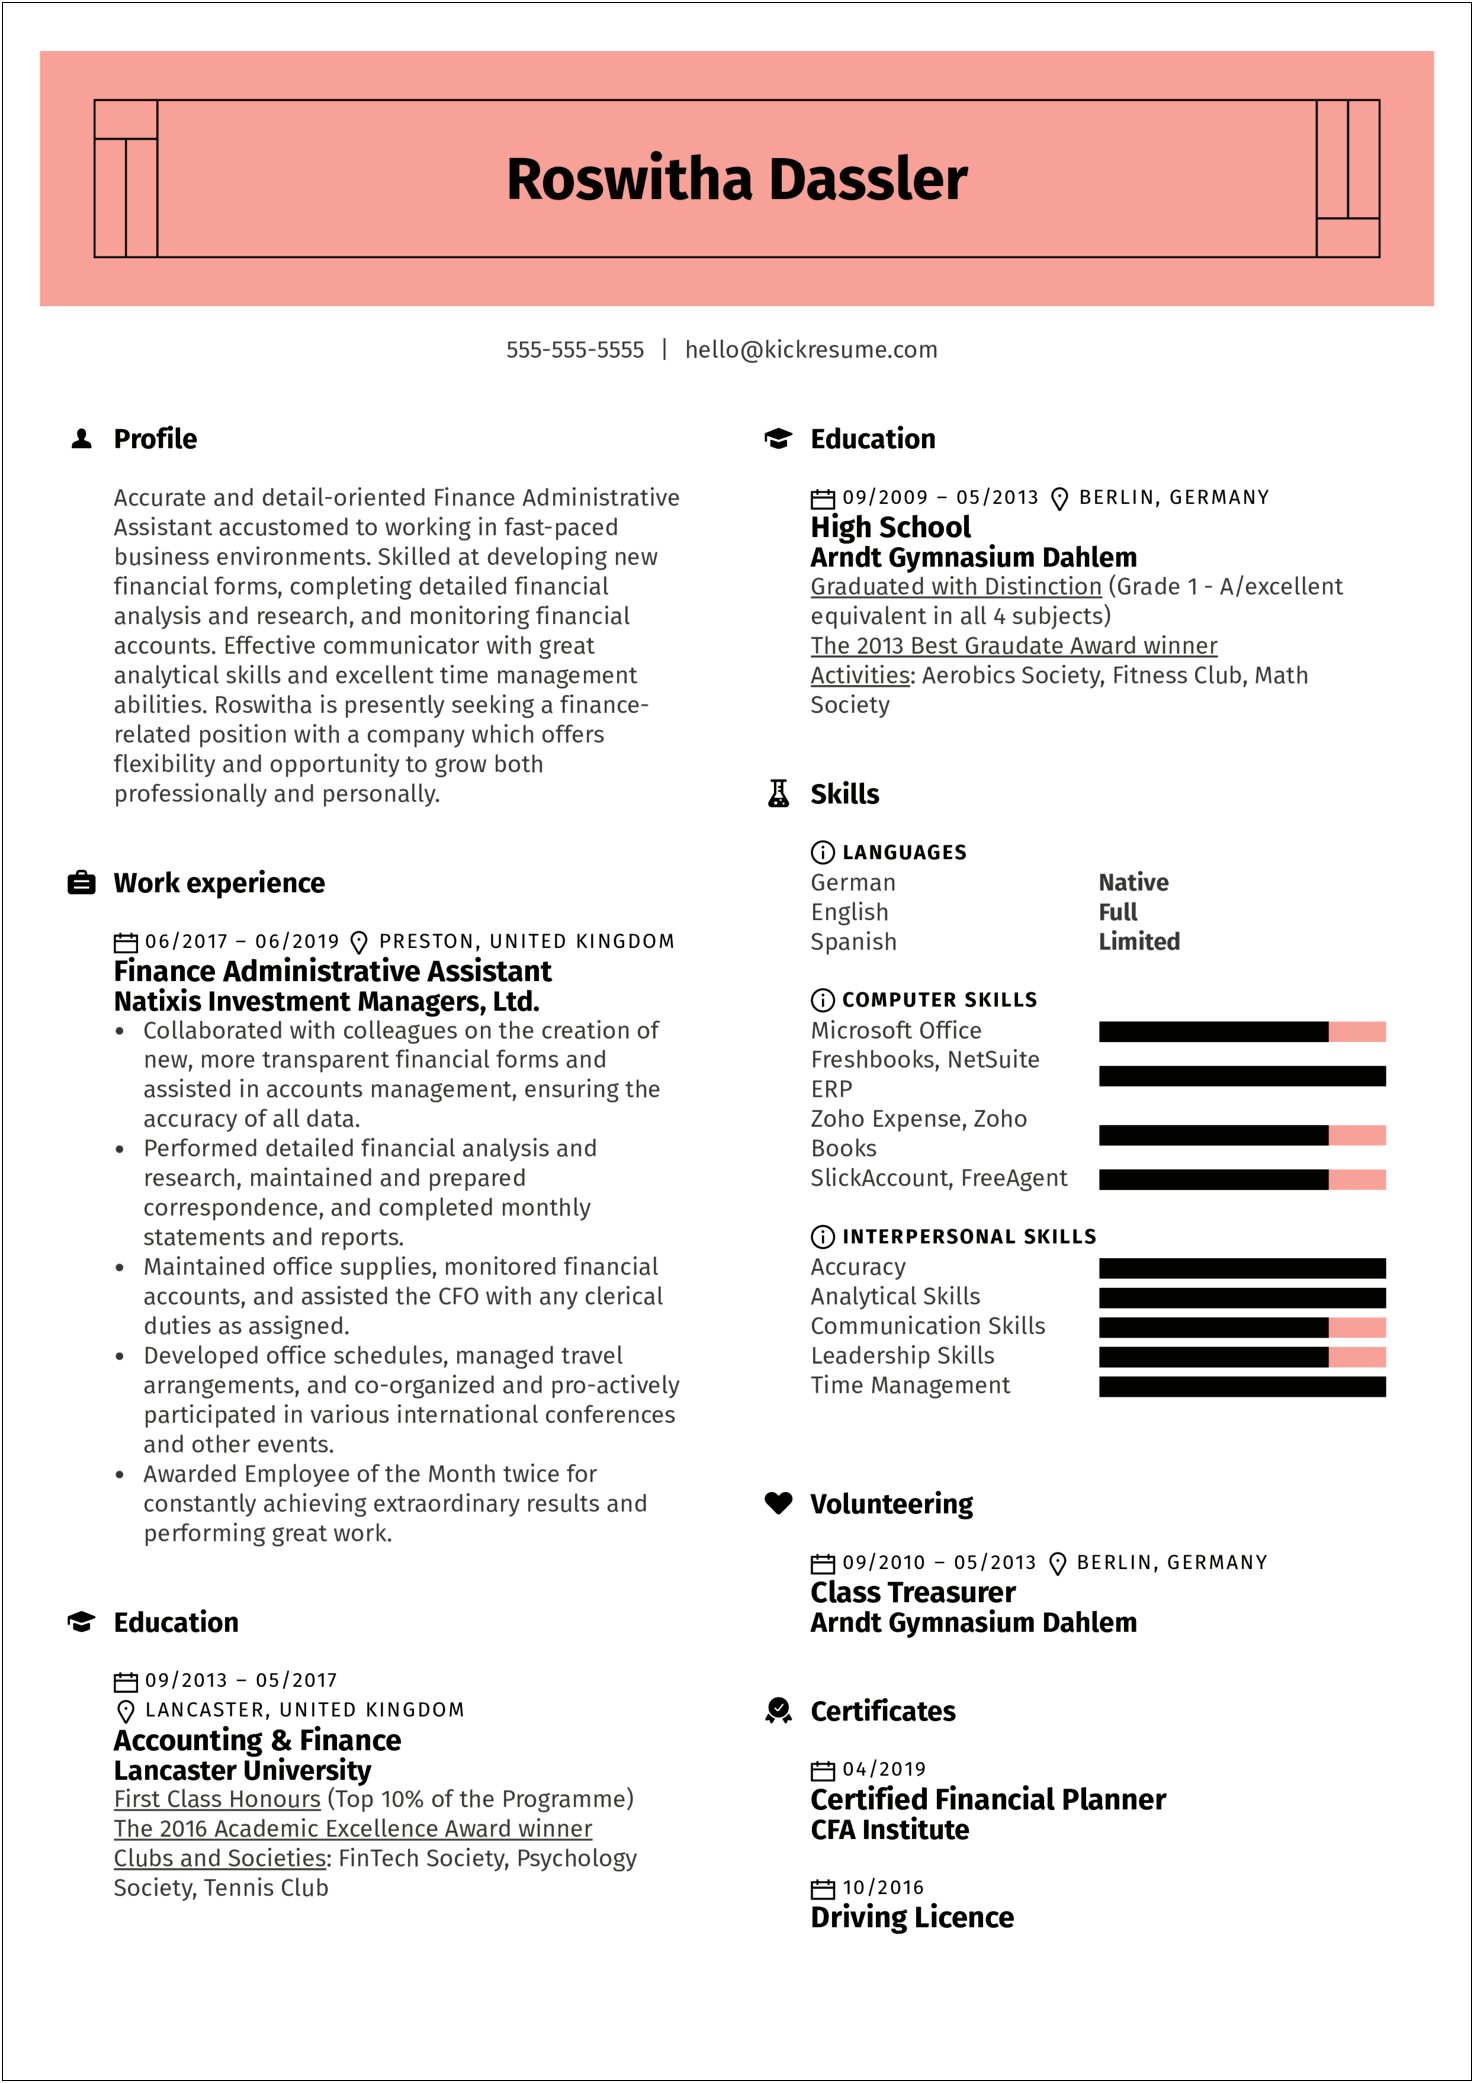 Resume Job Description Administrative Assistant